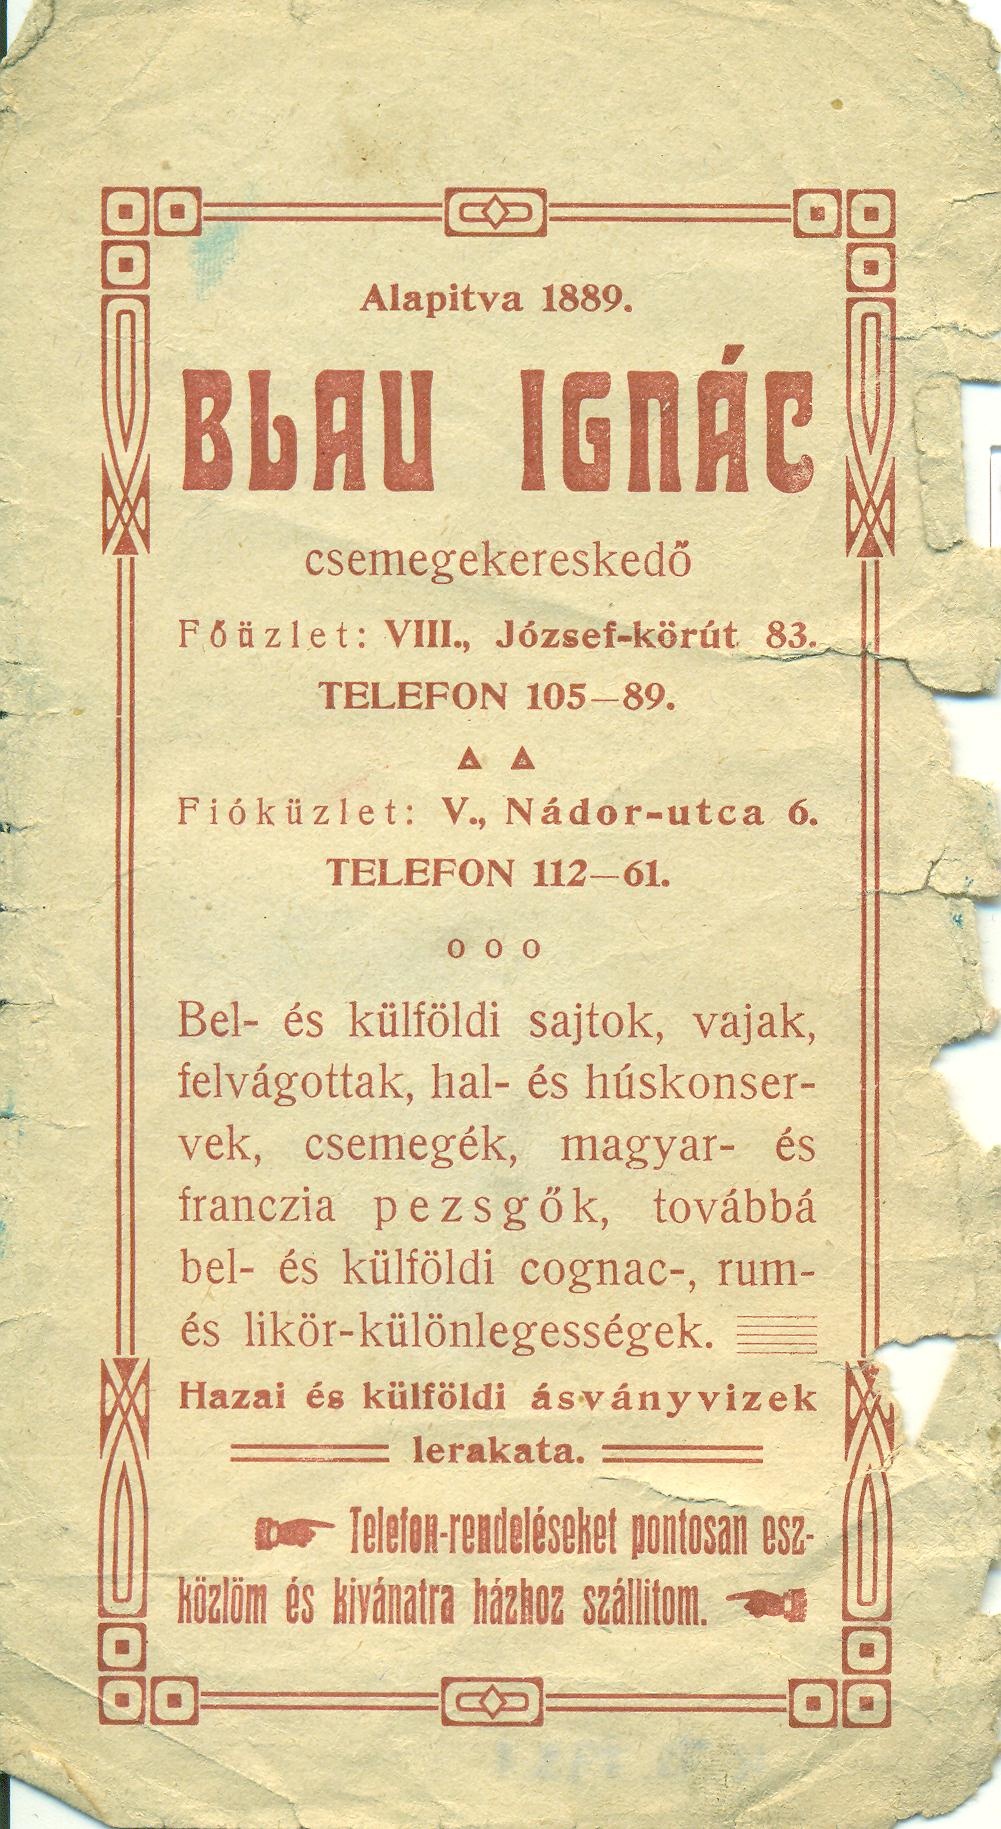 Blau Ignác csemegekereskedő (Magyar Kereskedelmi és Vendéglátóipari Múzeum CC BY-NC-SA)